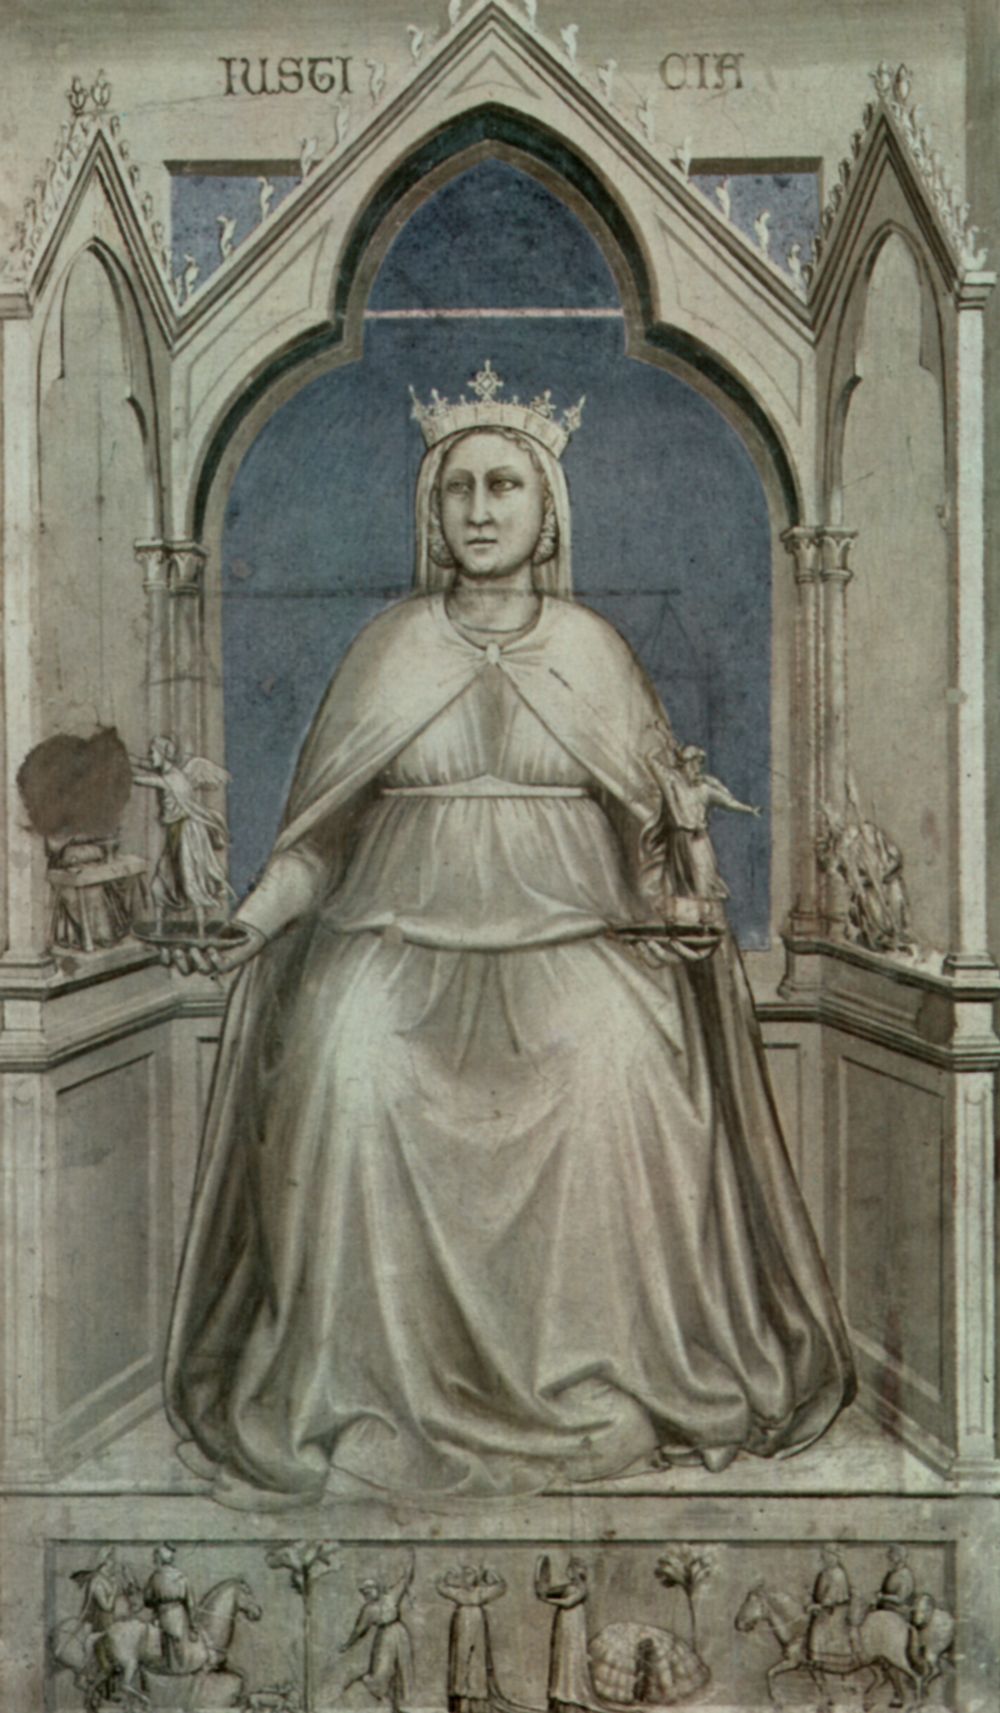 Giotto di Bondone: Freskenzyklus in der Arenakapelle in Padua (Scrovegni-Kapelle), Allegorie der Gerechtigkeit (Justizia)